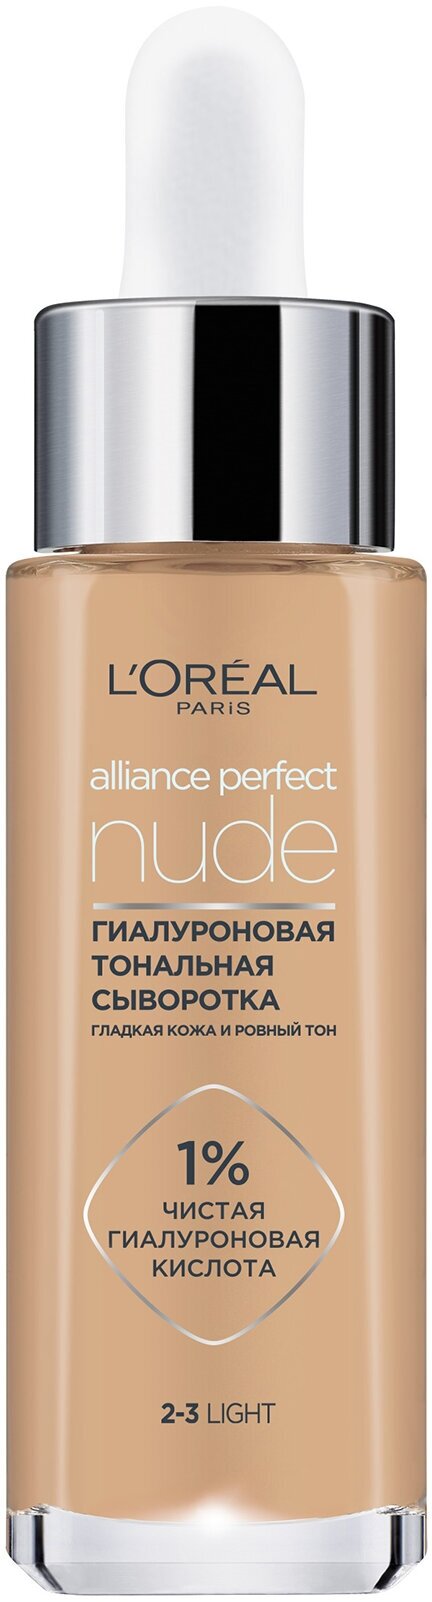 L'OREAL Тональная сыворотка для лица гиалуроновая Alliance Perfect Nude, 30 мл, Light